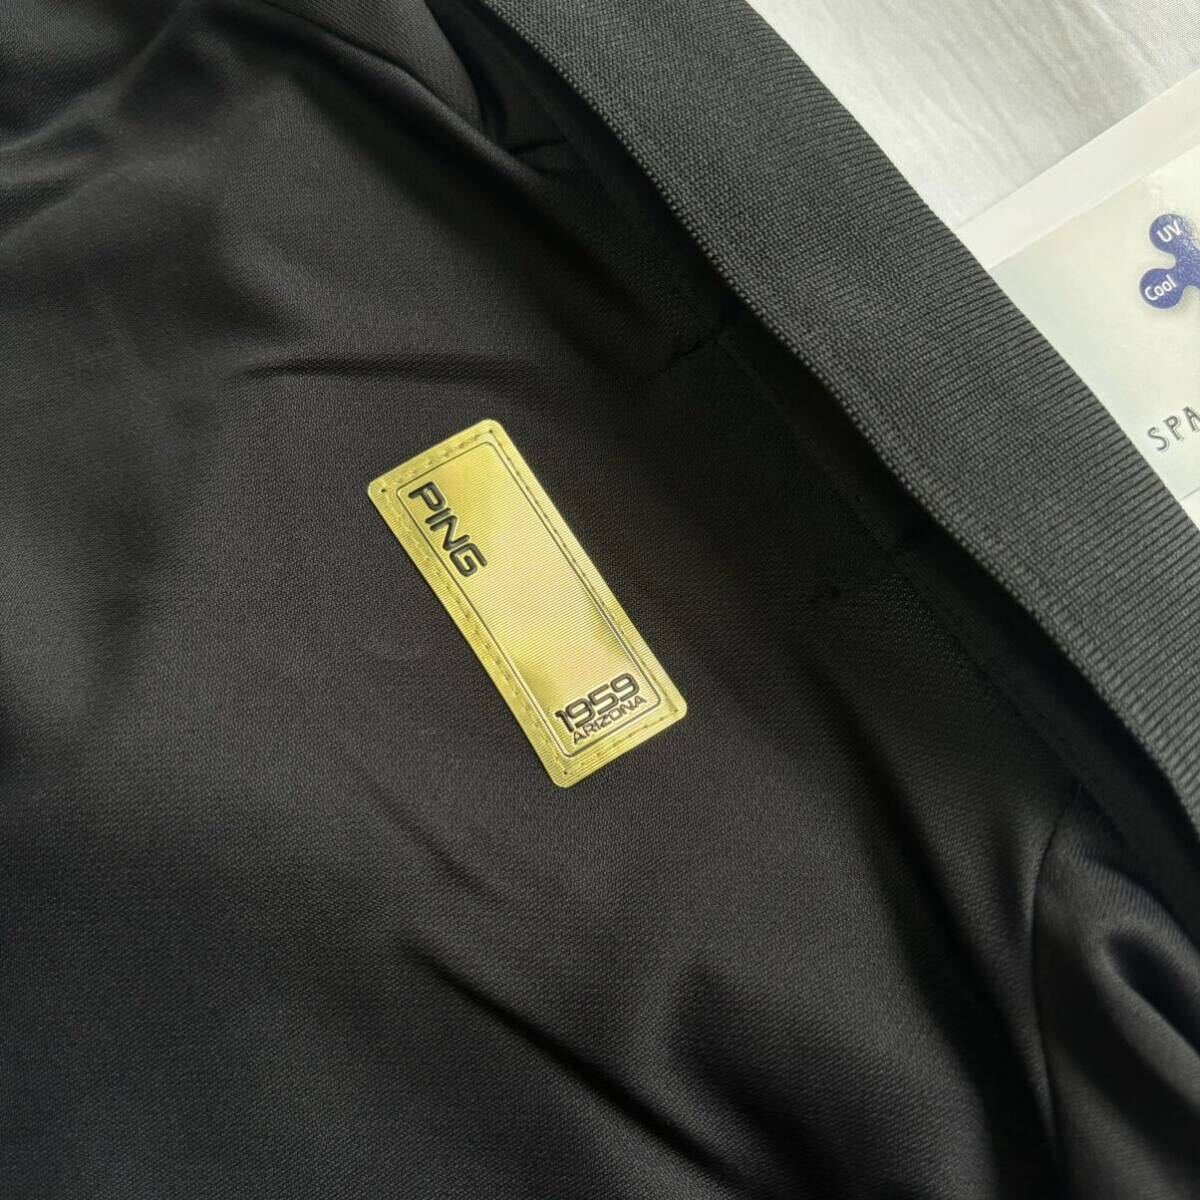 *H745 новый товар [ мужской M] чёрный PING Golf высокое качество Space тормозные колодки golf Sara Sara ткань рубашка-поло с коротким рукавом dry материалы обычная цена 15400 иен 6212160450